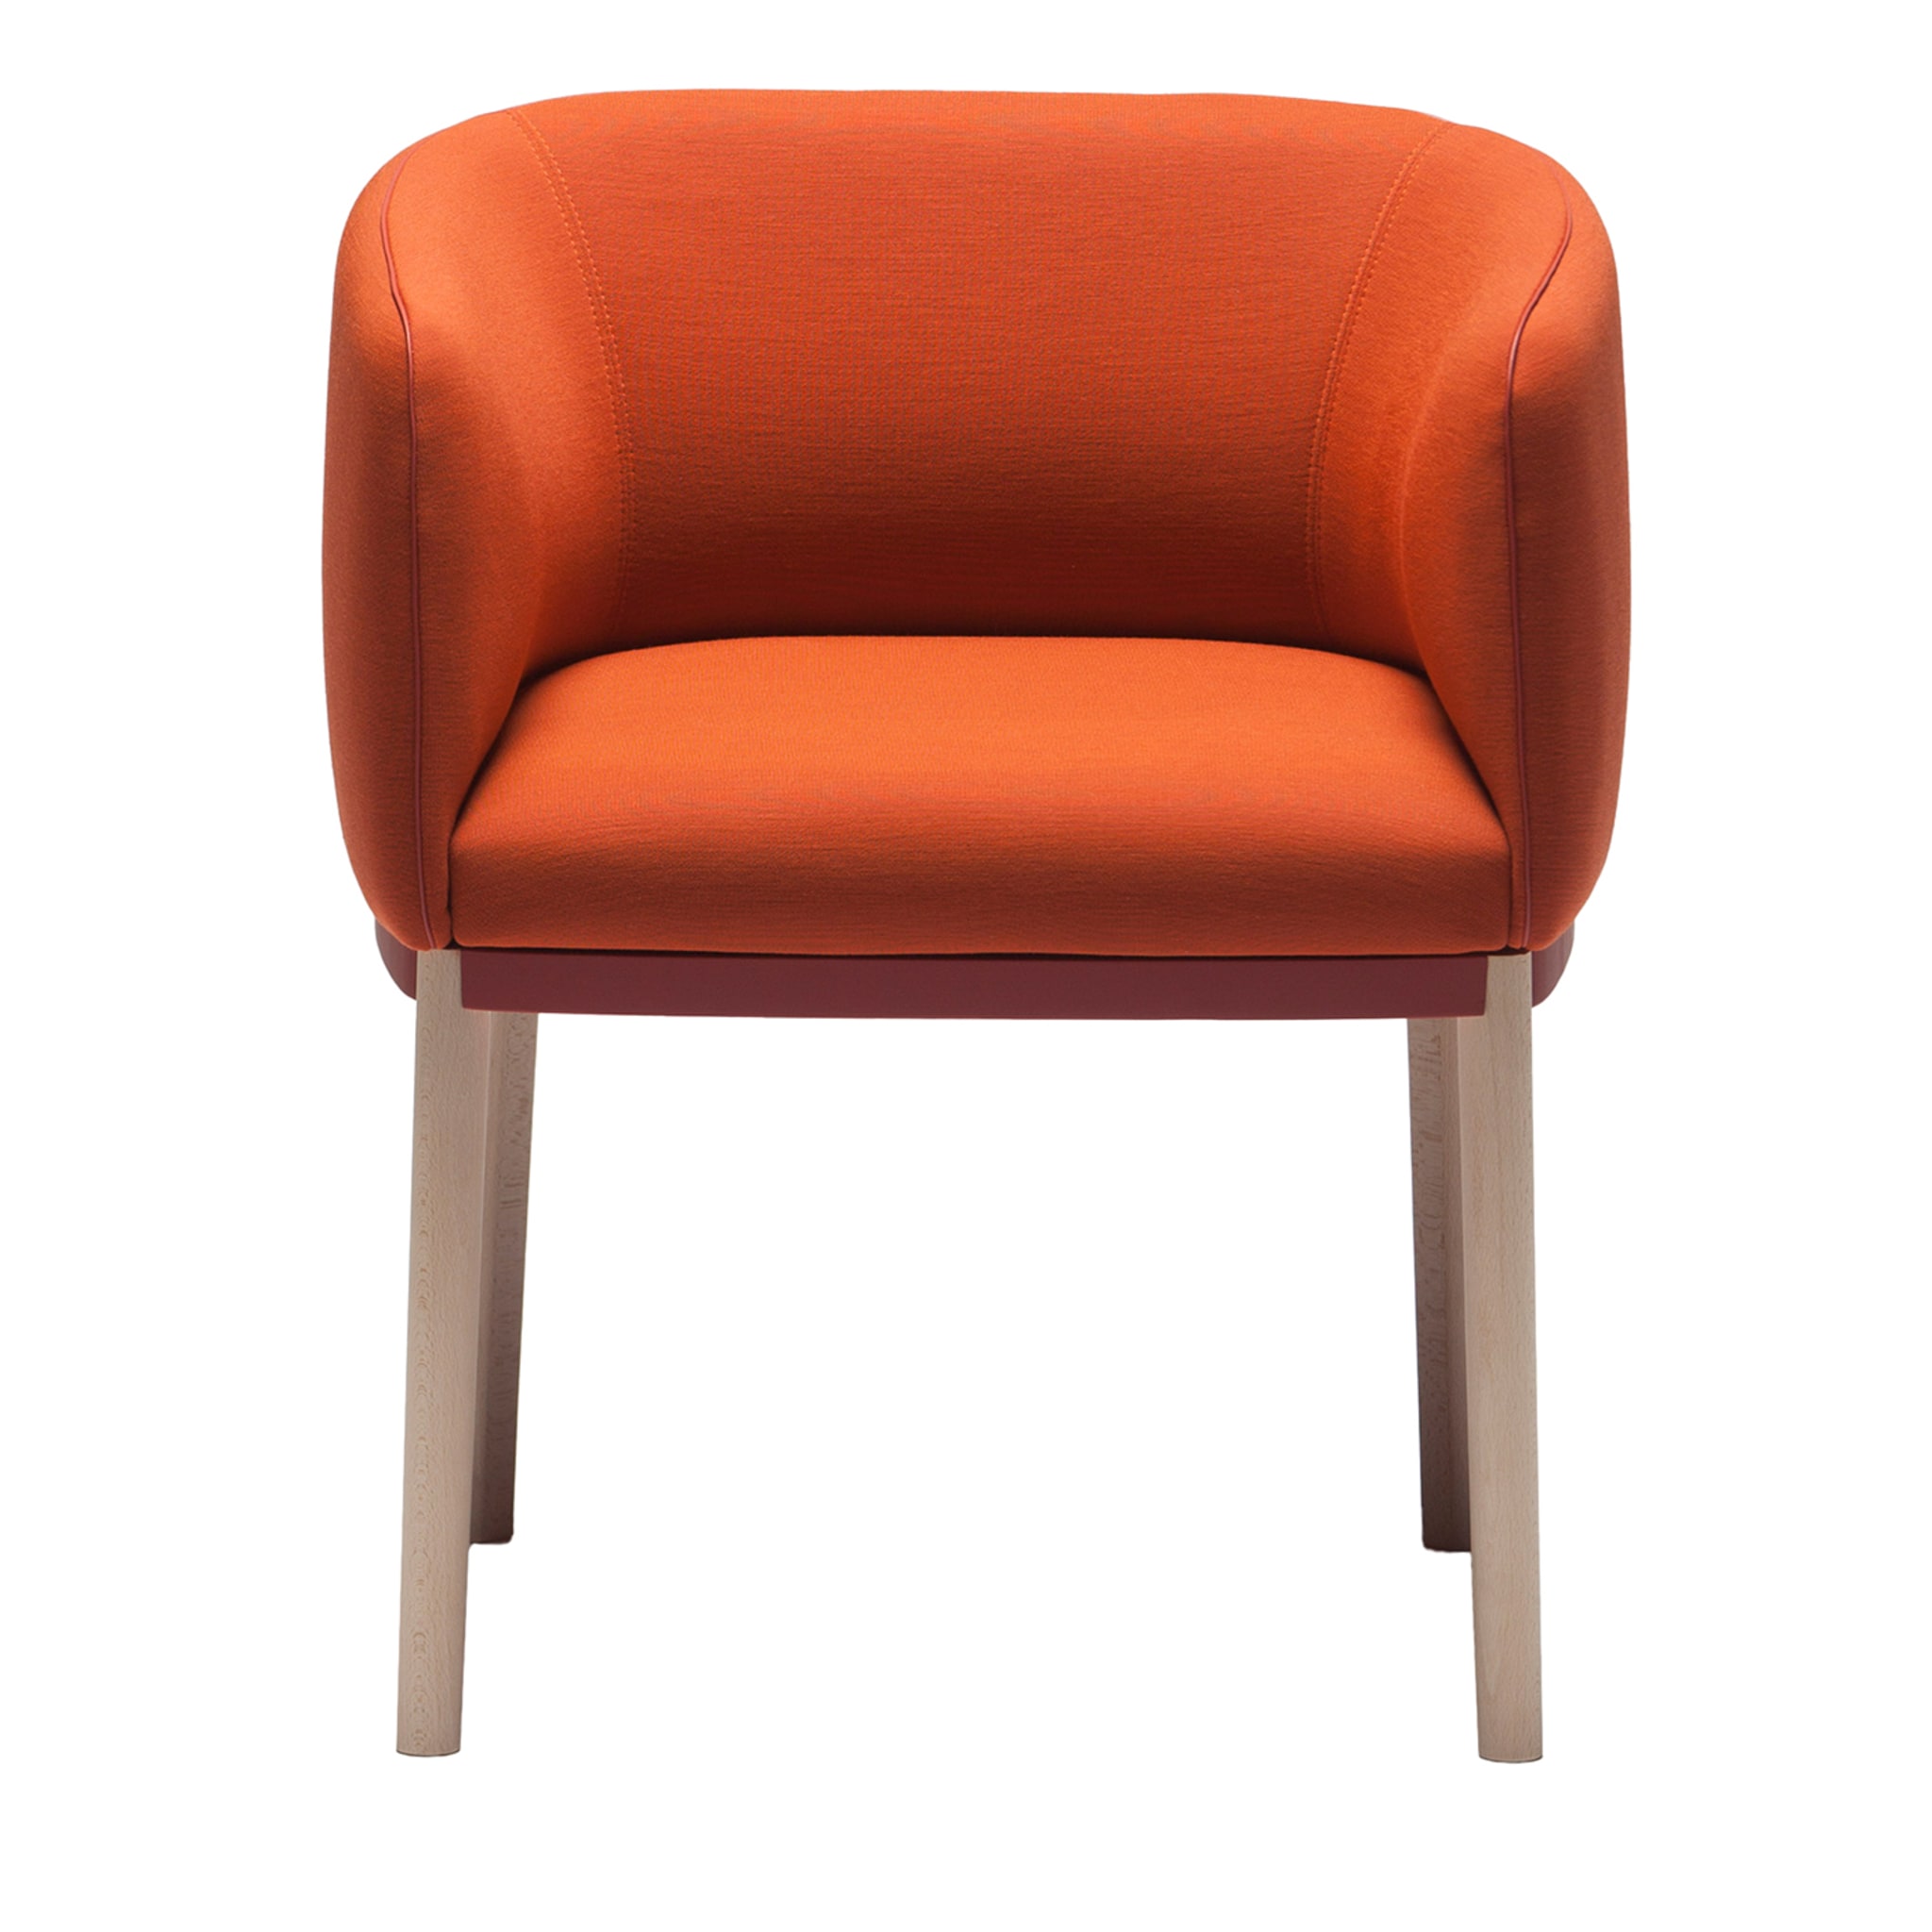 Cape 809 Orange Chair by Debiasi Sandri - Vue principale